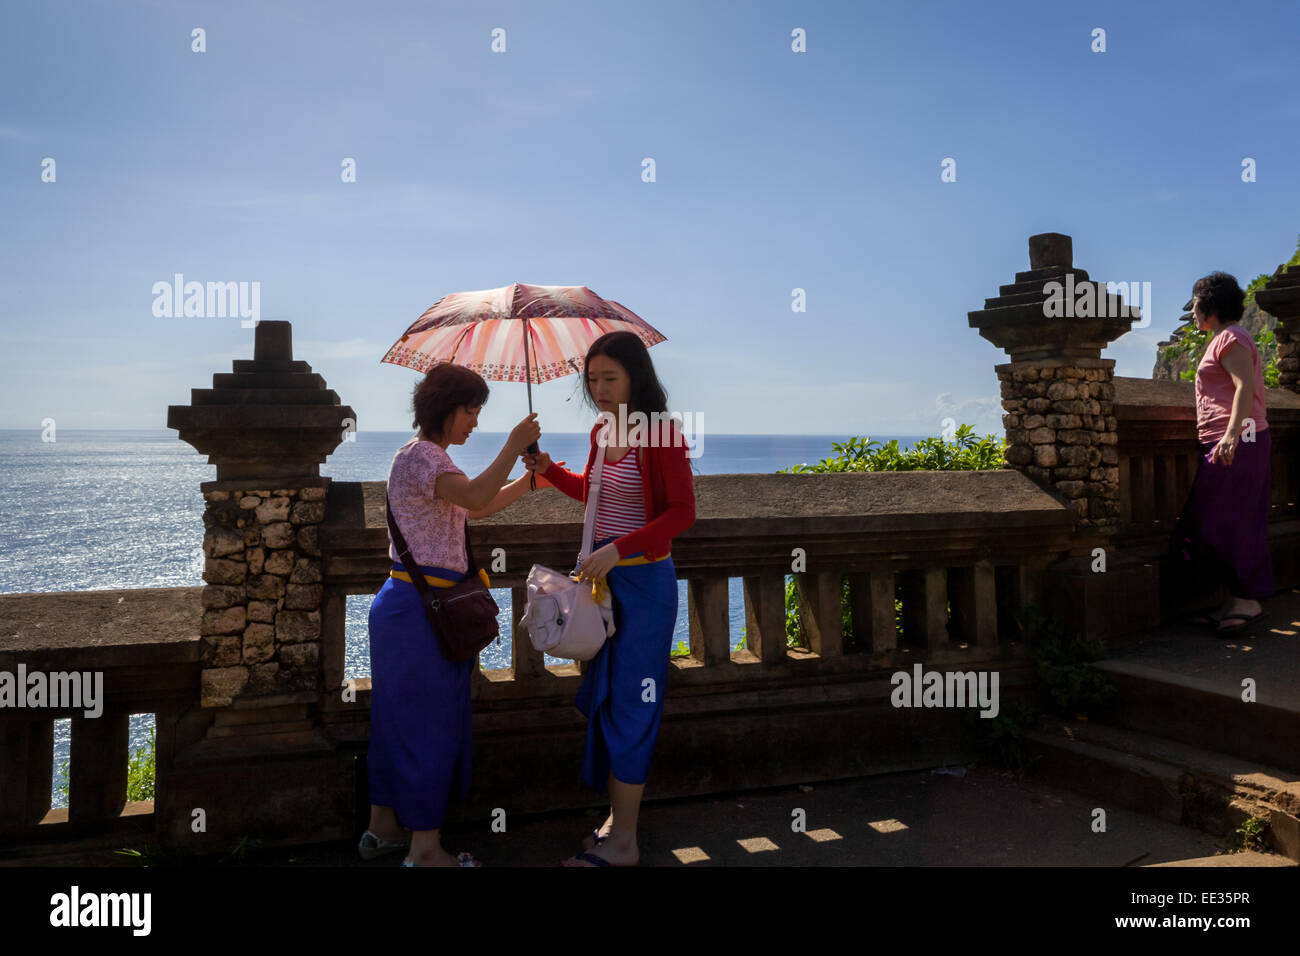 Los turistas de Asia oriental compartiendo un paraguas en un día soleado en Uluwatu, Bali. Foto de stock